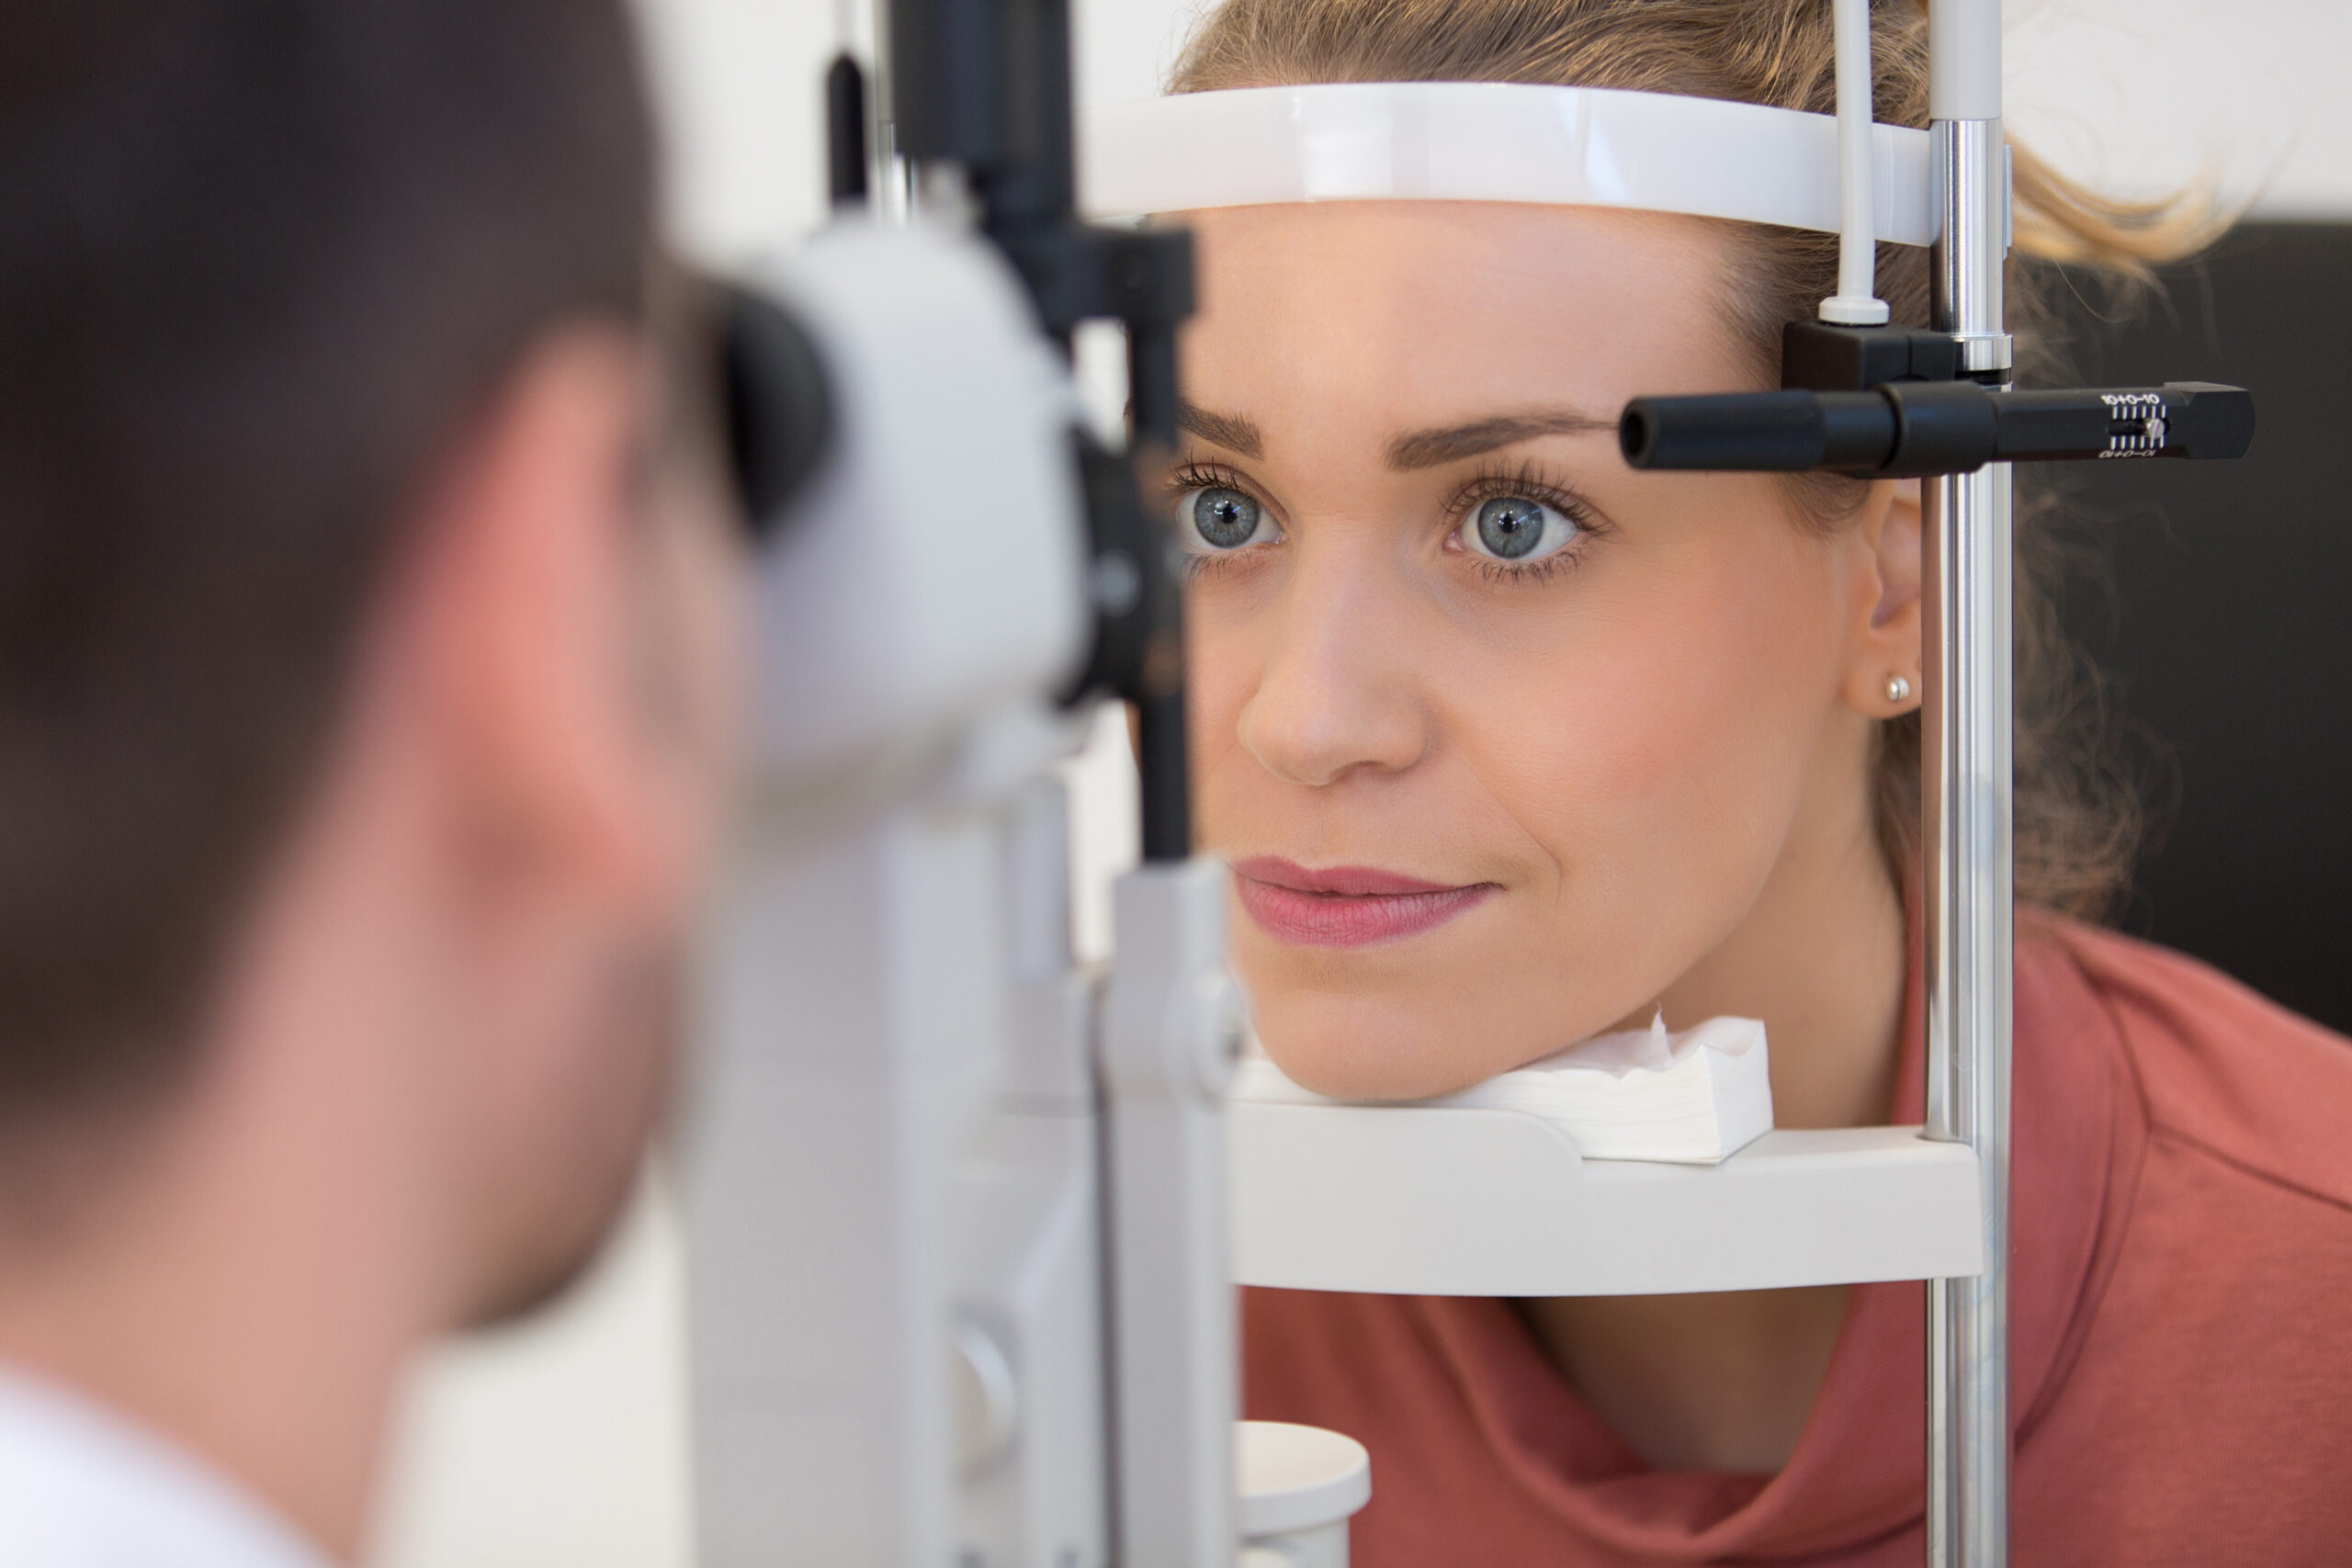 cataracts treatment